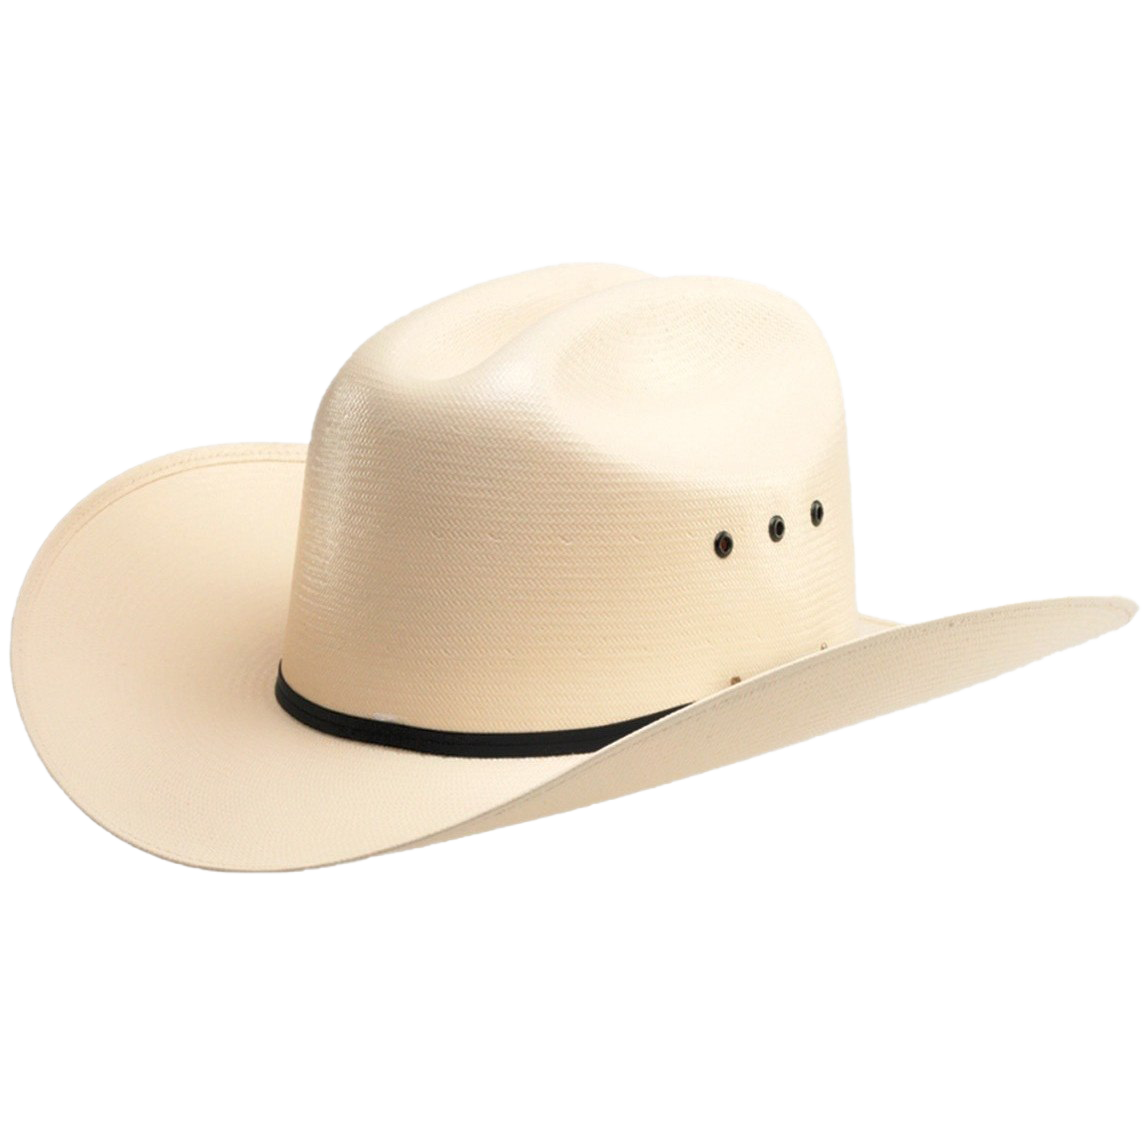 Cowboy Hat PNG Images HD